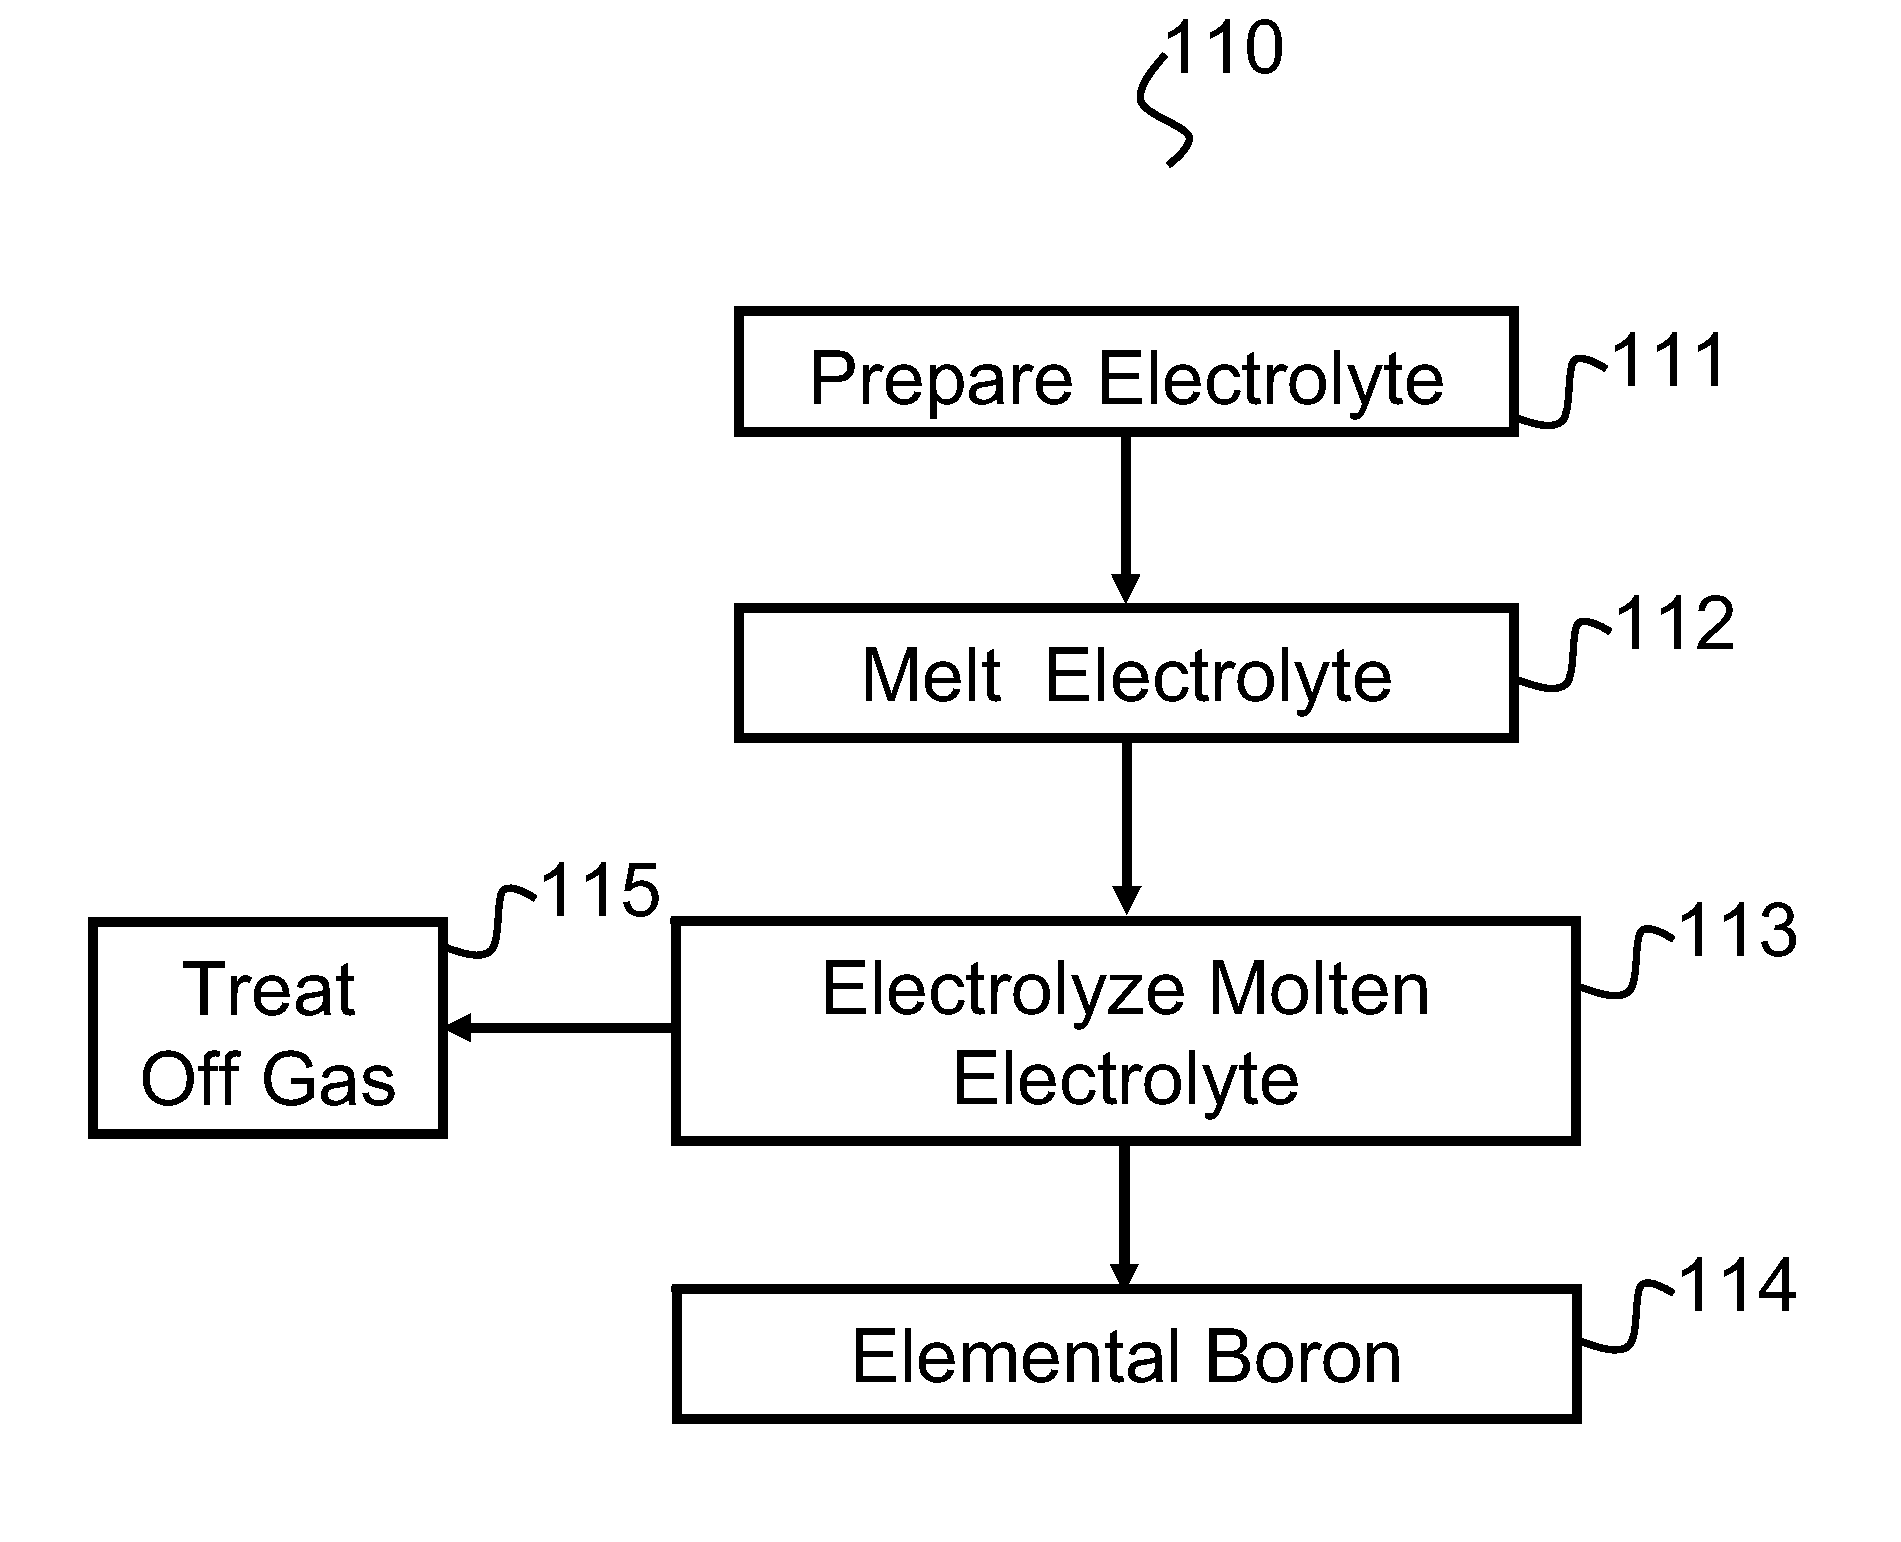 Synthesis of boron using molten salt electrolysis